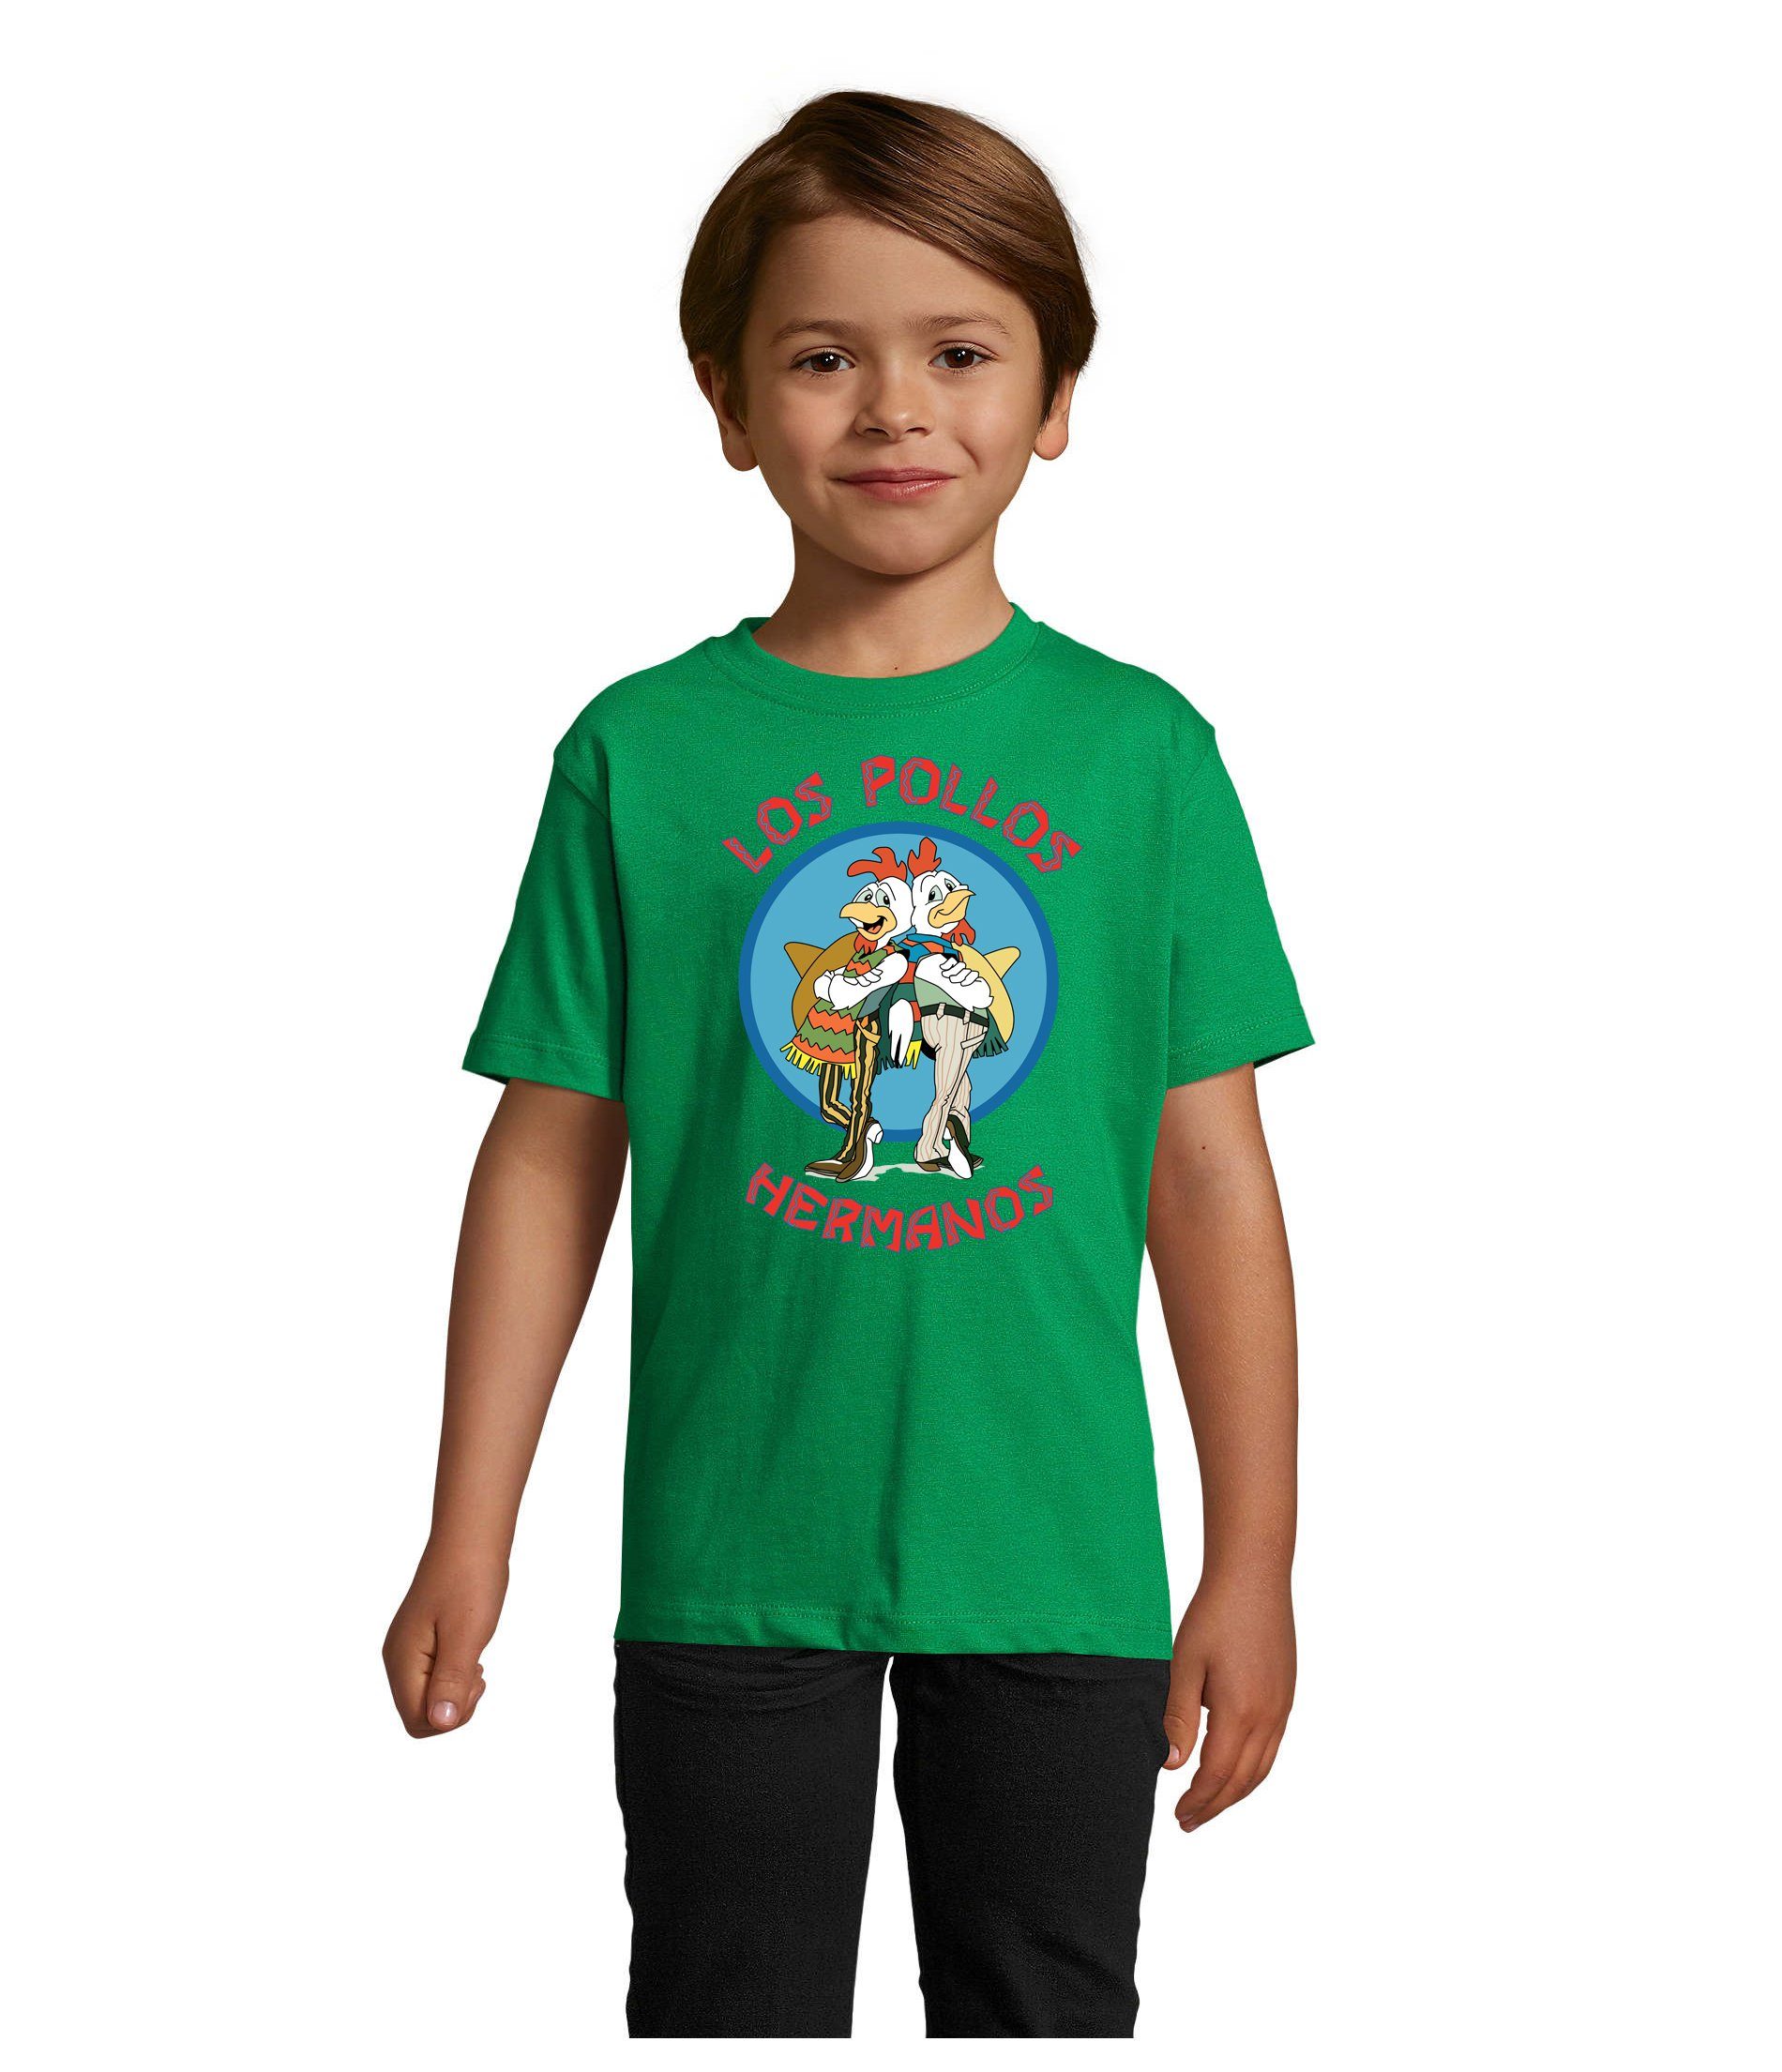 Blondie & Brownie T-Shirt Kinder Jungen & Mädchen Hermanos Hühner Los Pollos in vielen Farben Grün